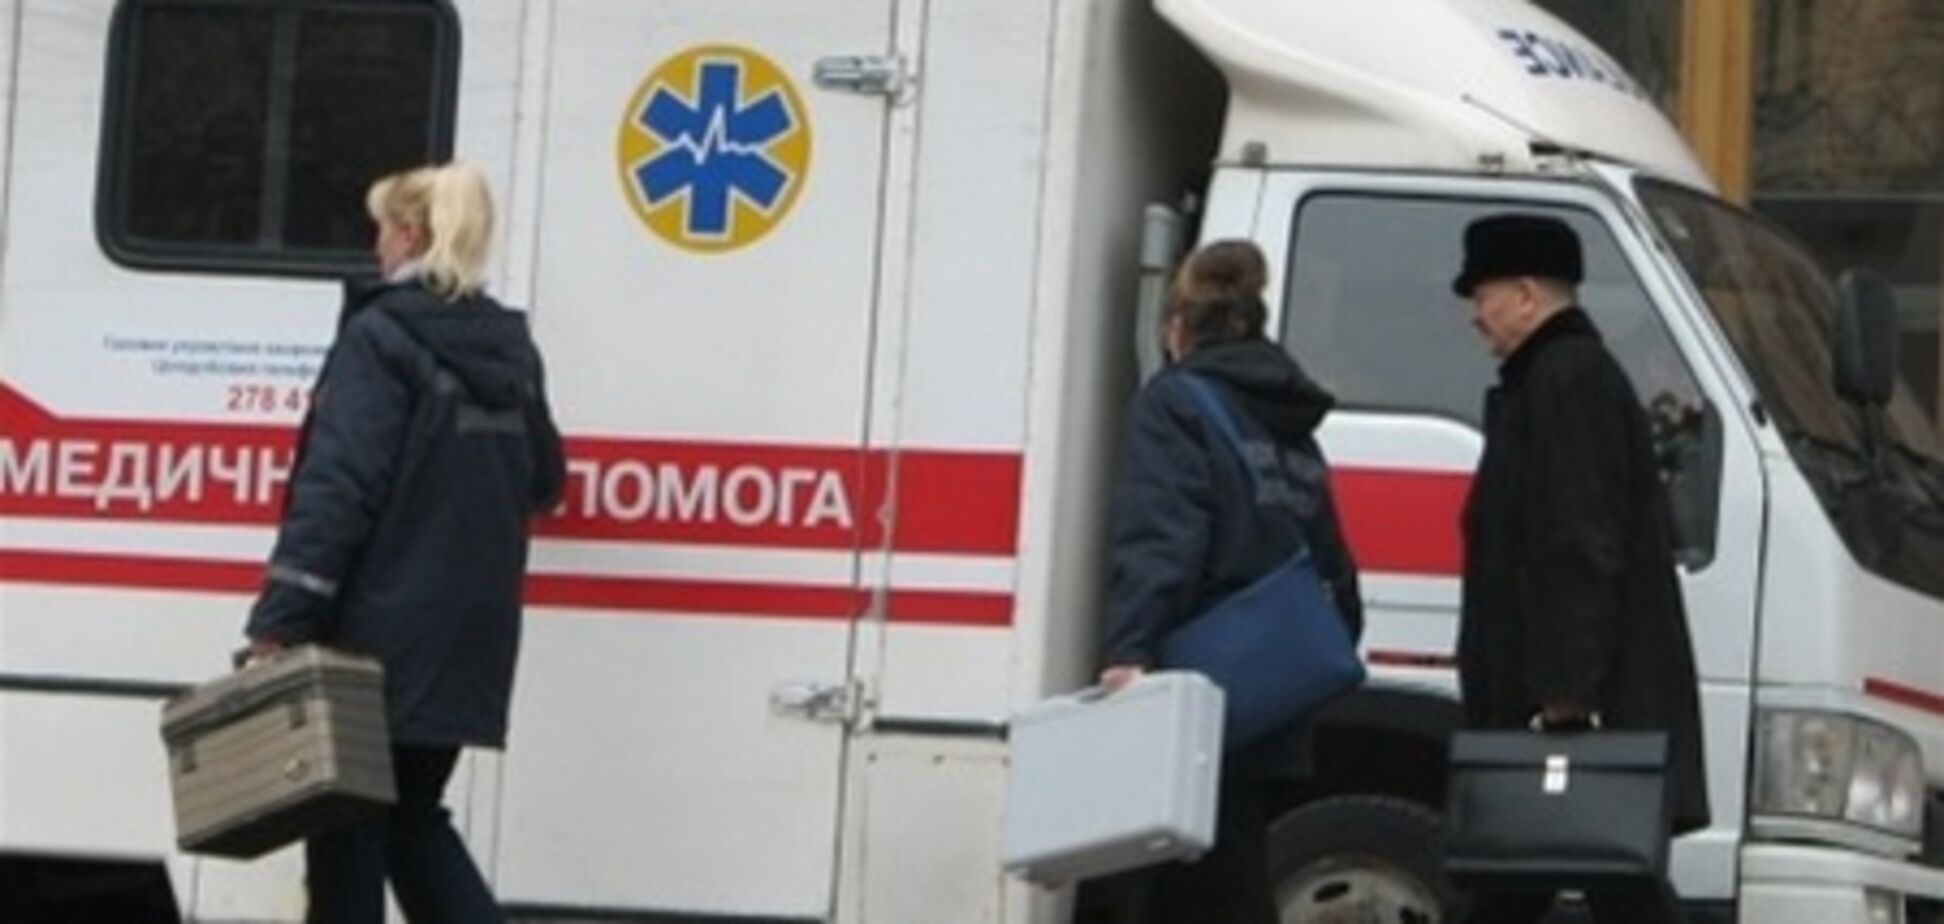 Количество пострадавших от взрыва в киевском ресторане возросло до 11 человек. Видео